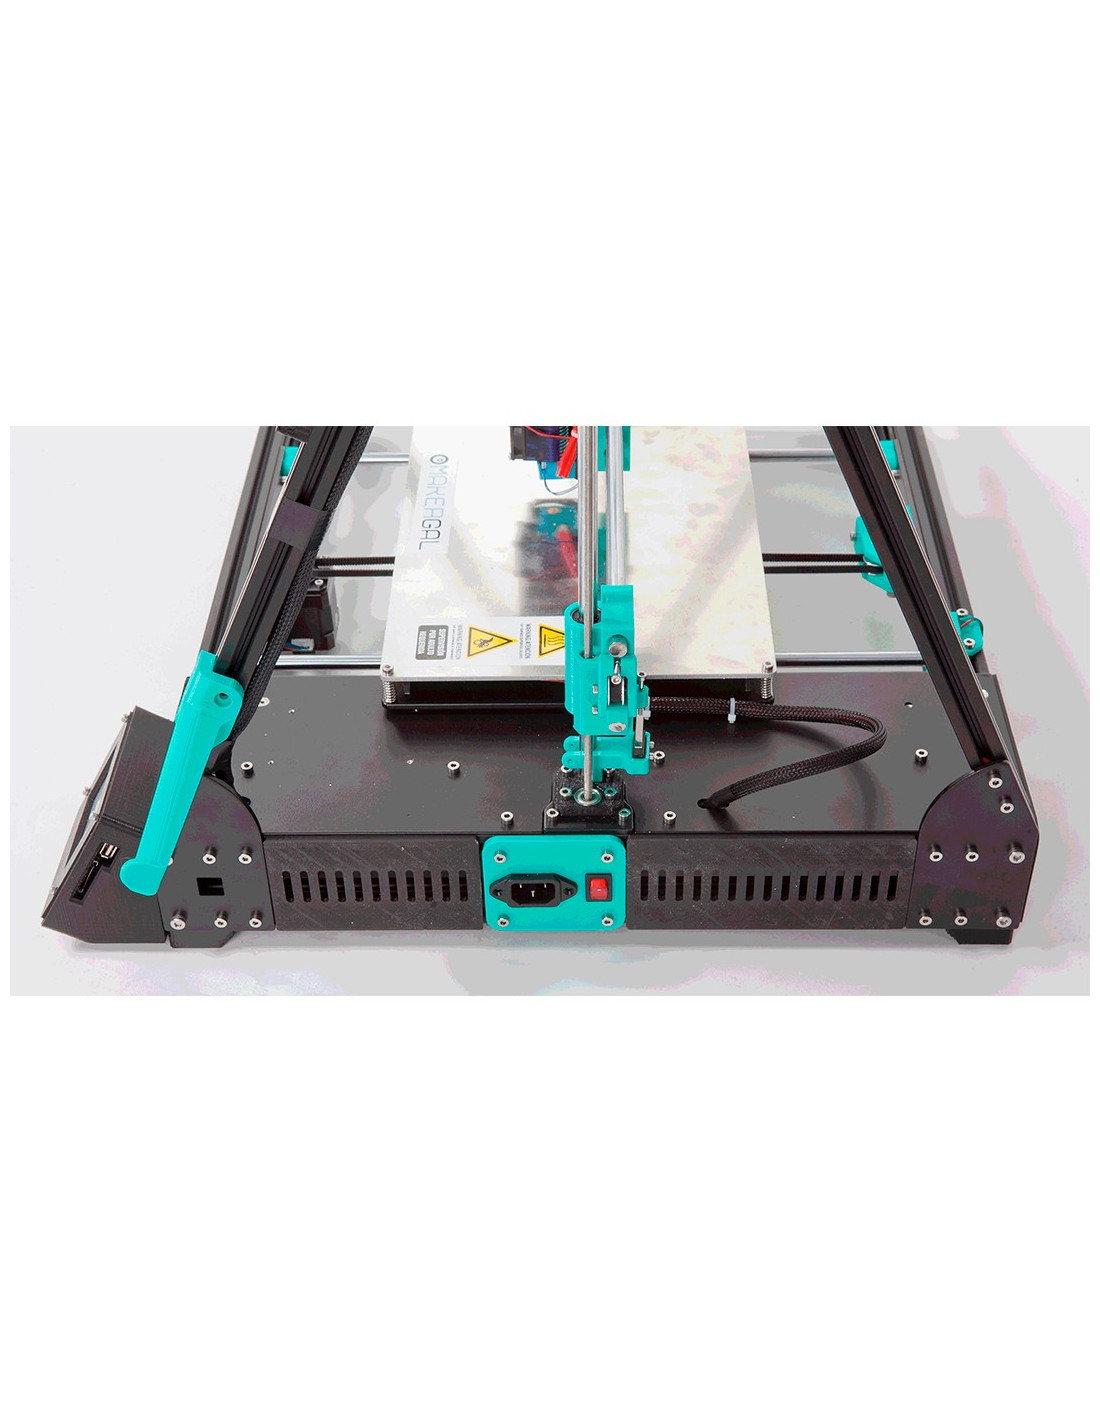 MakerGal Mendel Max XL V6 3D Printer